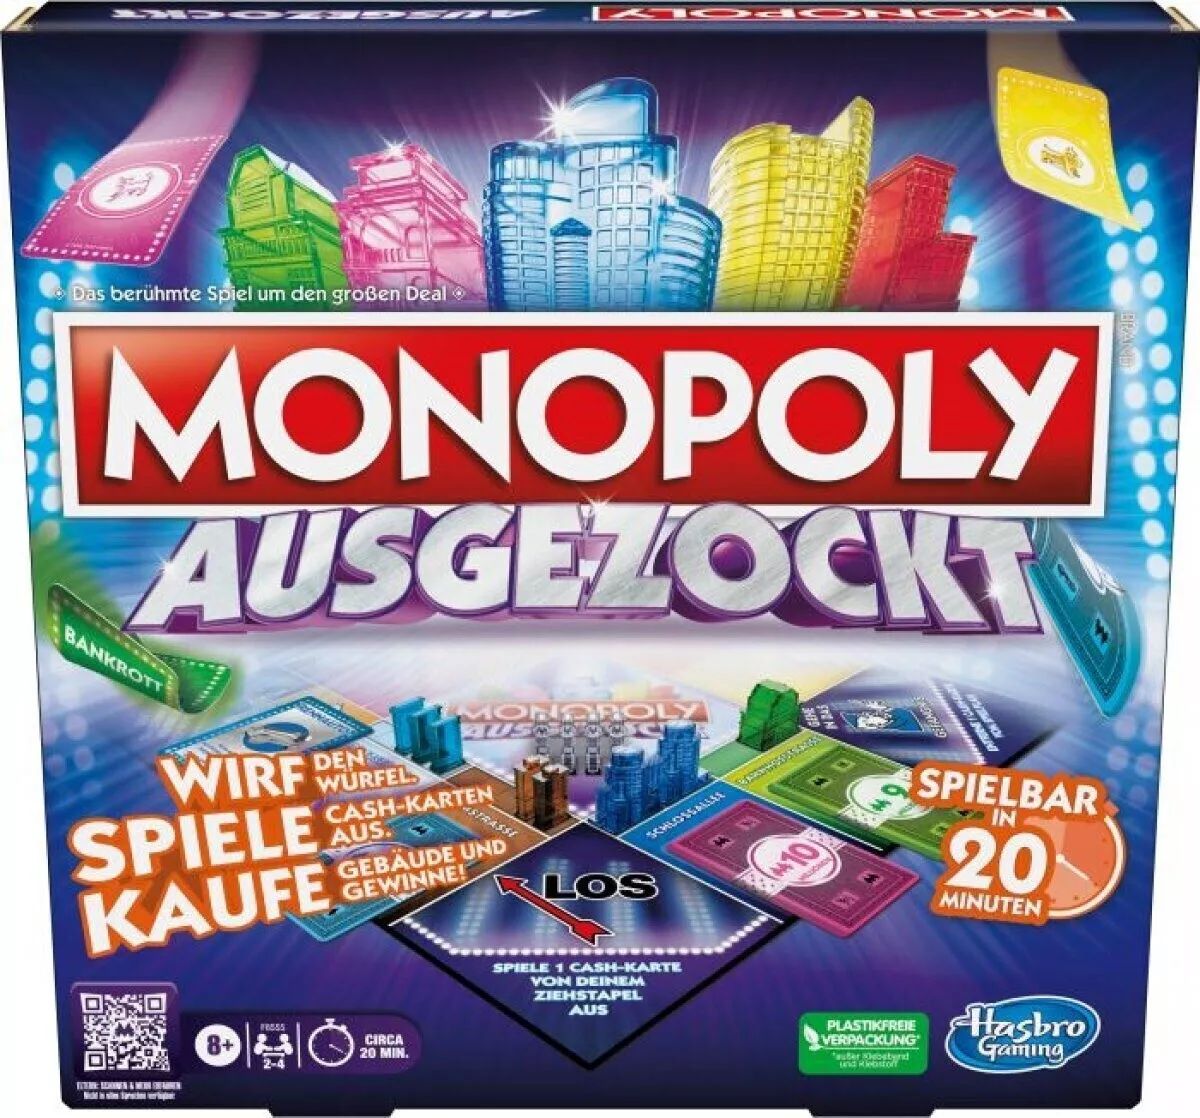 Monopoly Ausgezockt F8555100